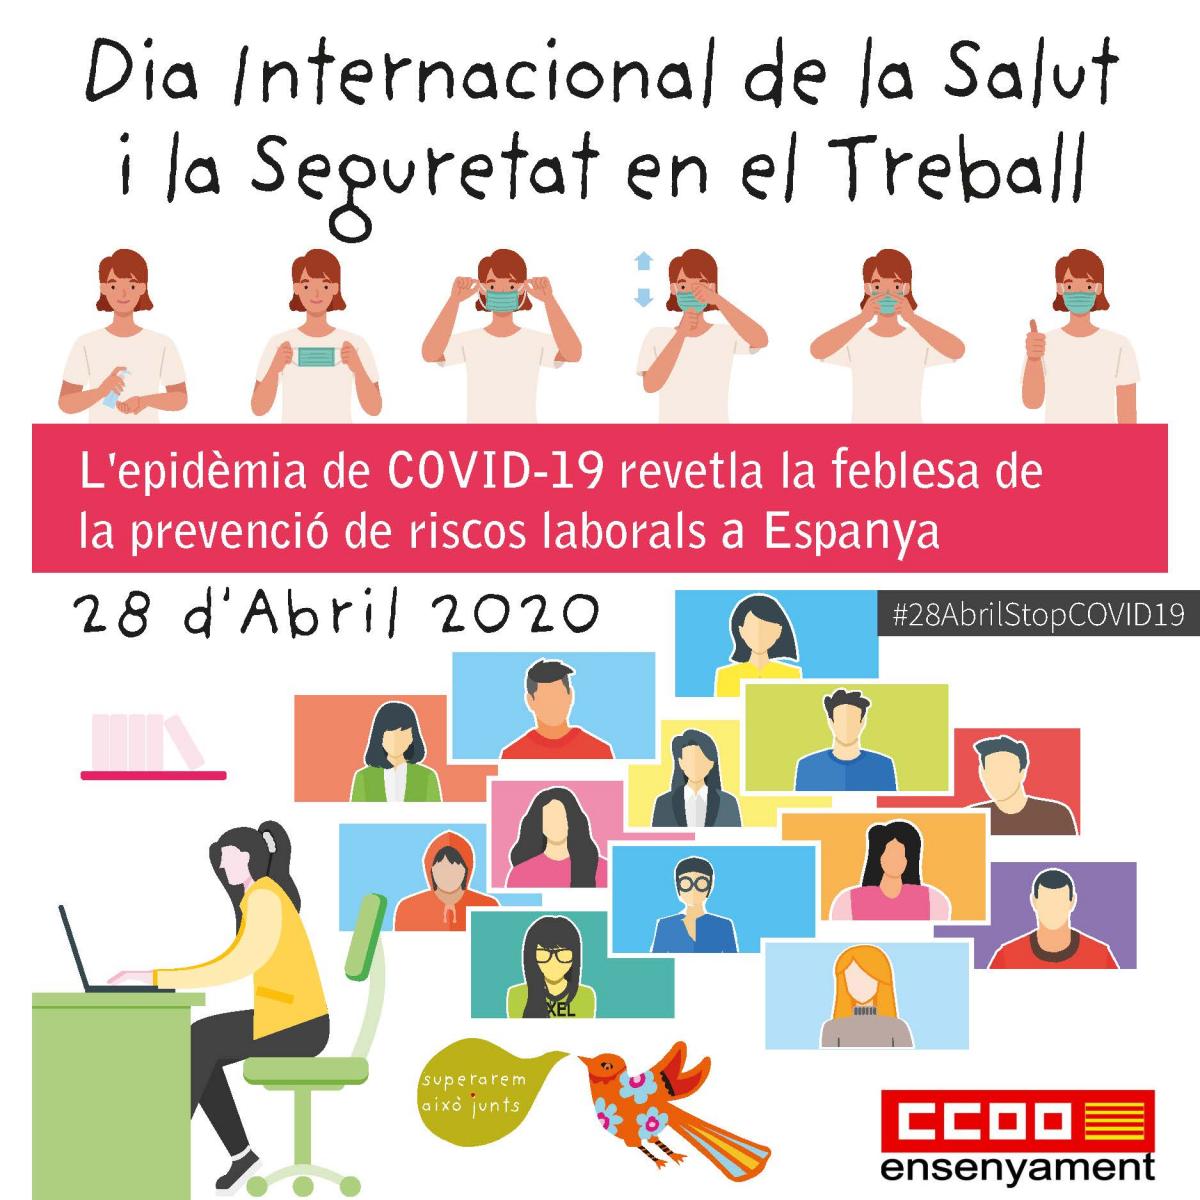 28 d'Abril 2020 Dia Internacional de la Salut i Seguretat en el Treball